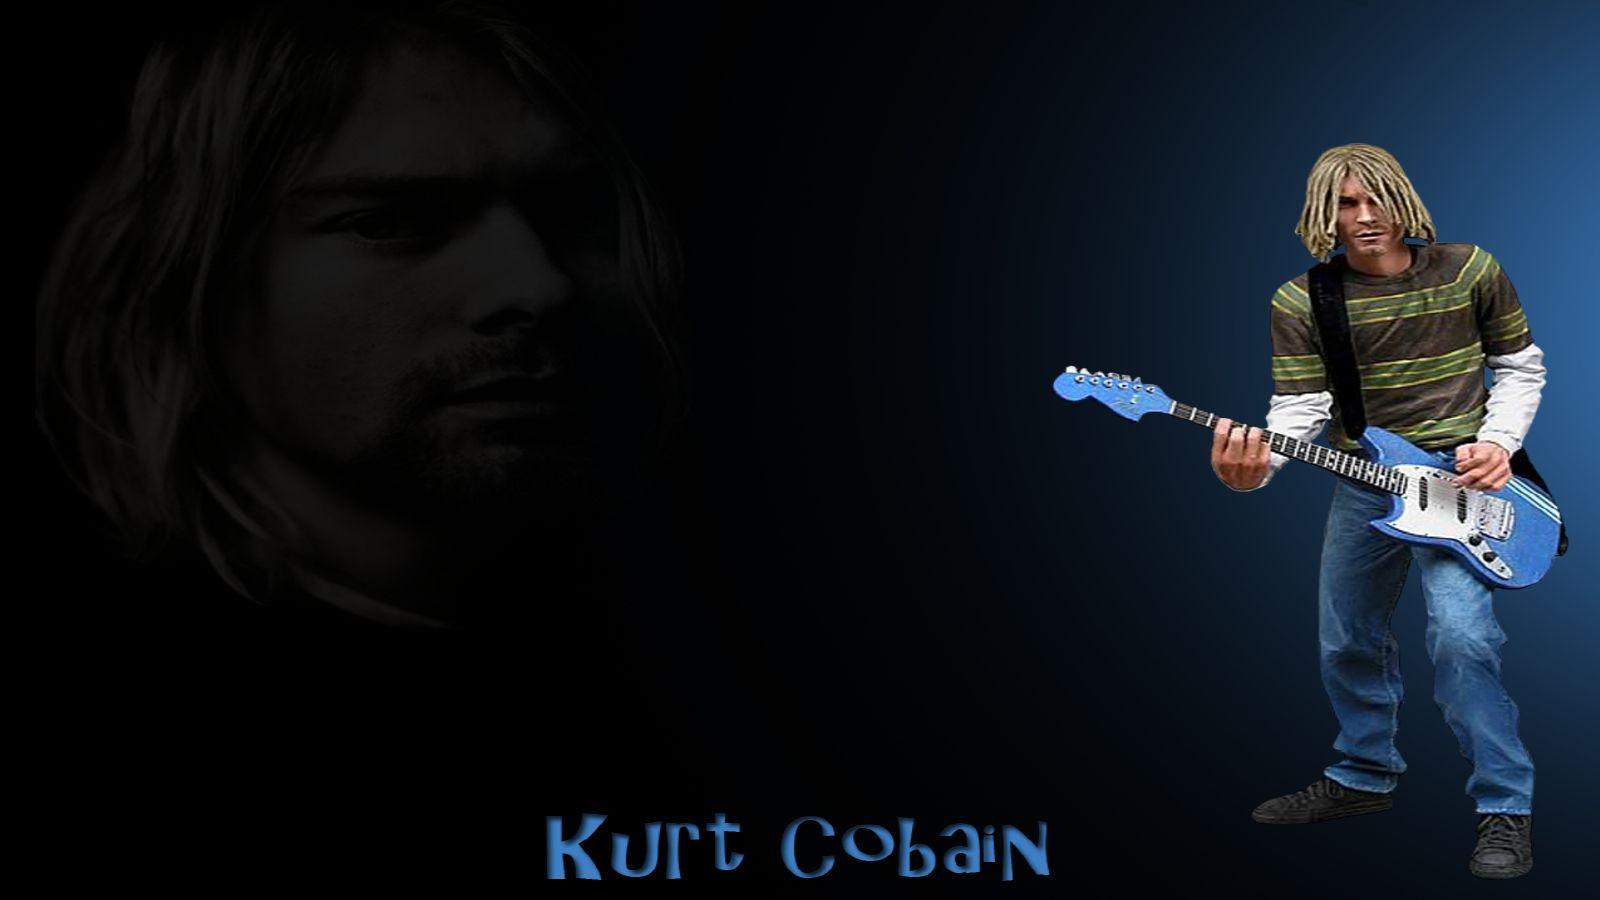 Kurt Cobain Wallpaper and Background Imagex900